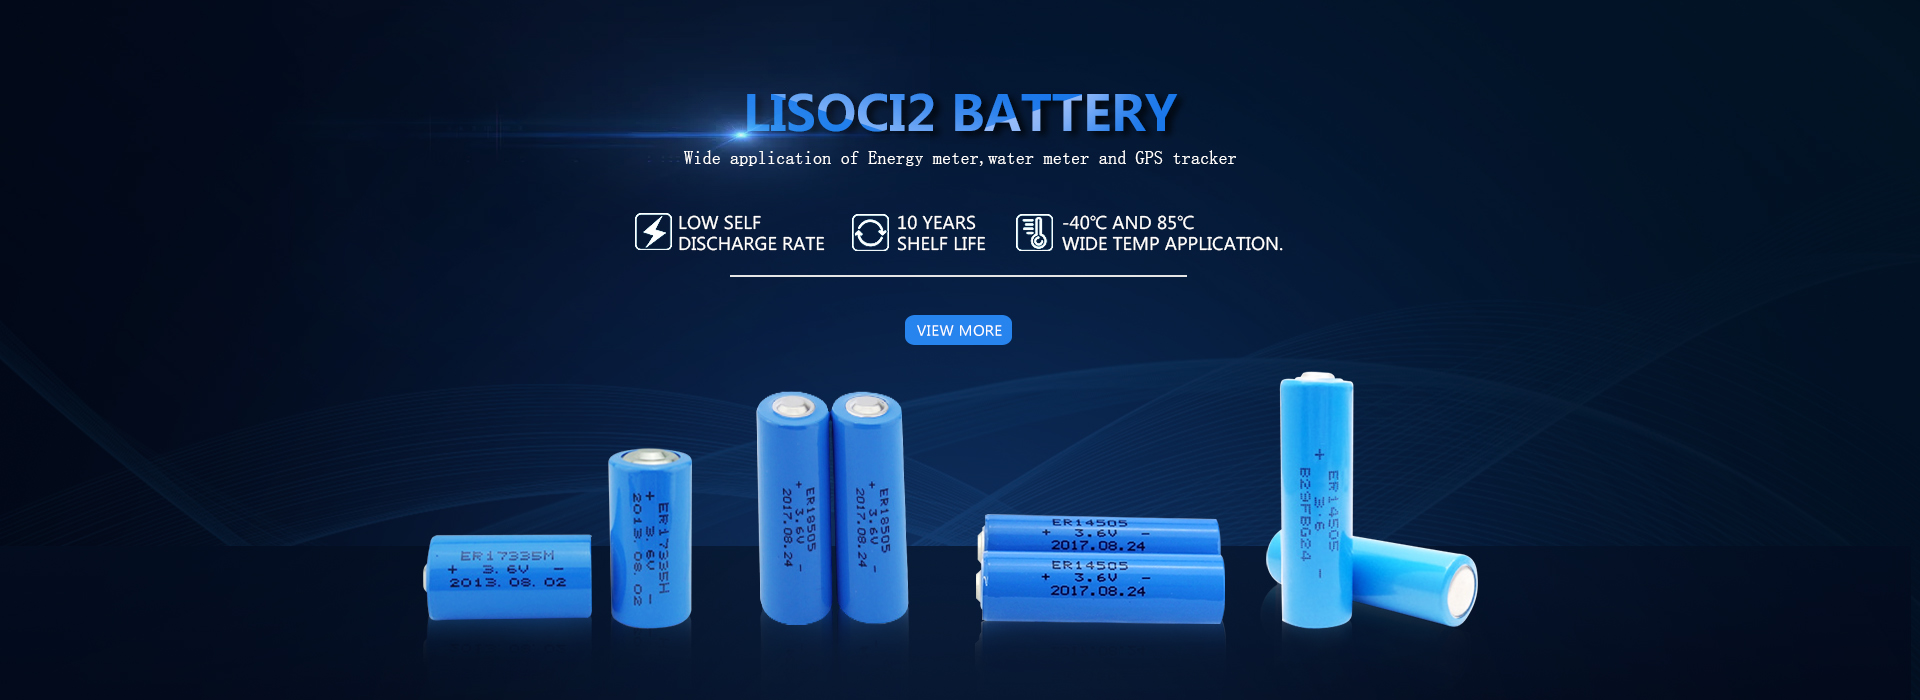 Výrobcovia LiSoci2